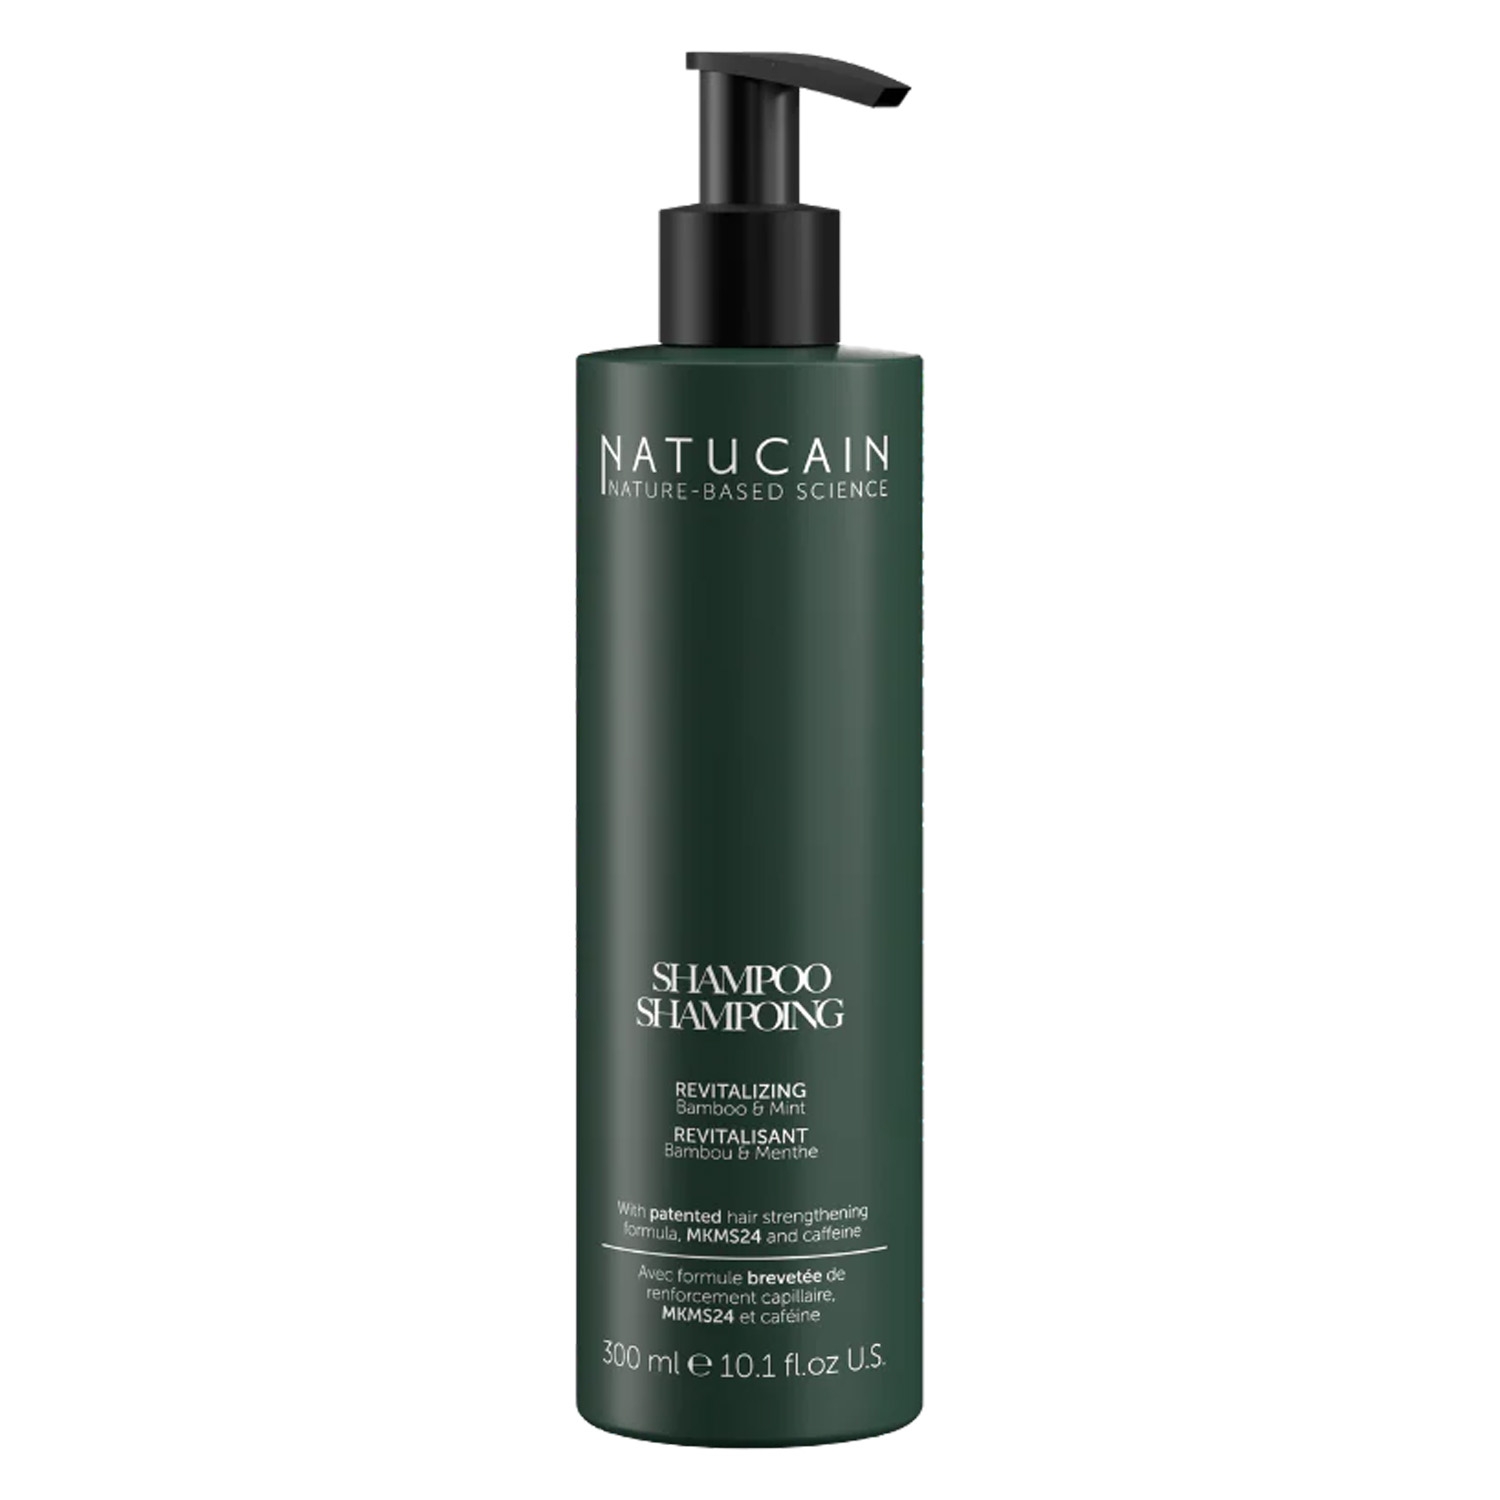 Produktbild von NATUCAIN - Revitalizing Shampoo